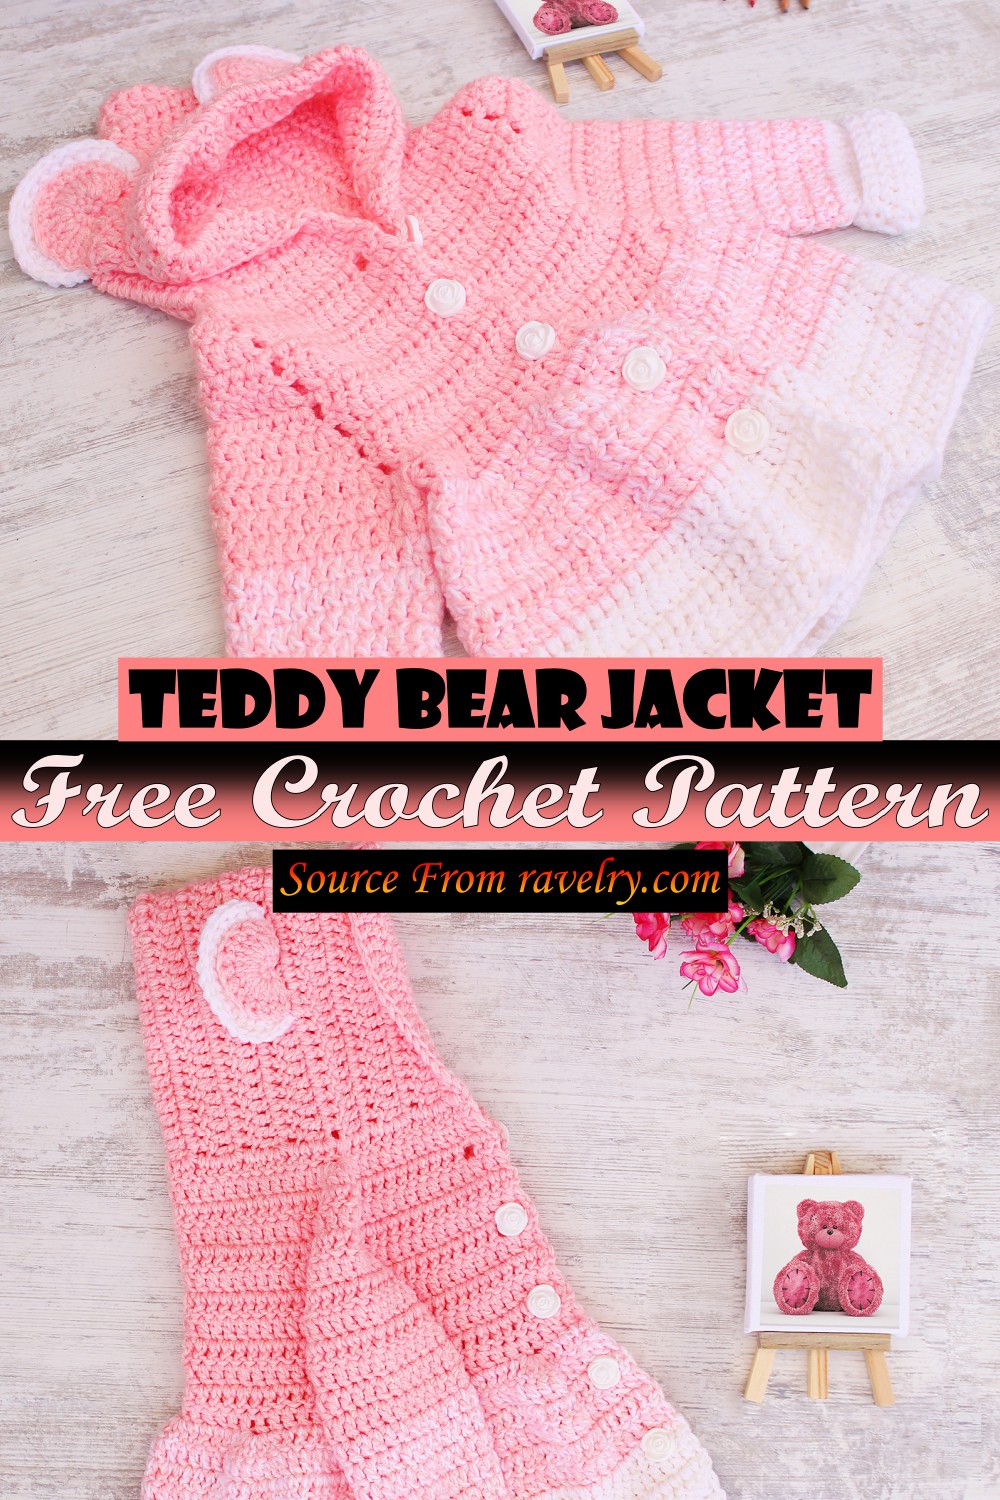 Free Crochet Teddy Bear Jacket Pattern